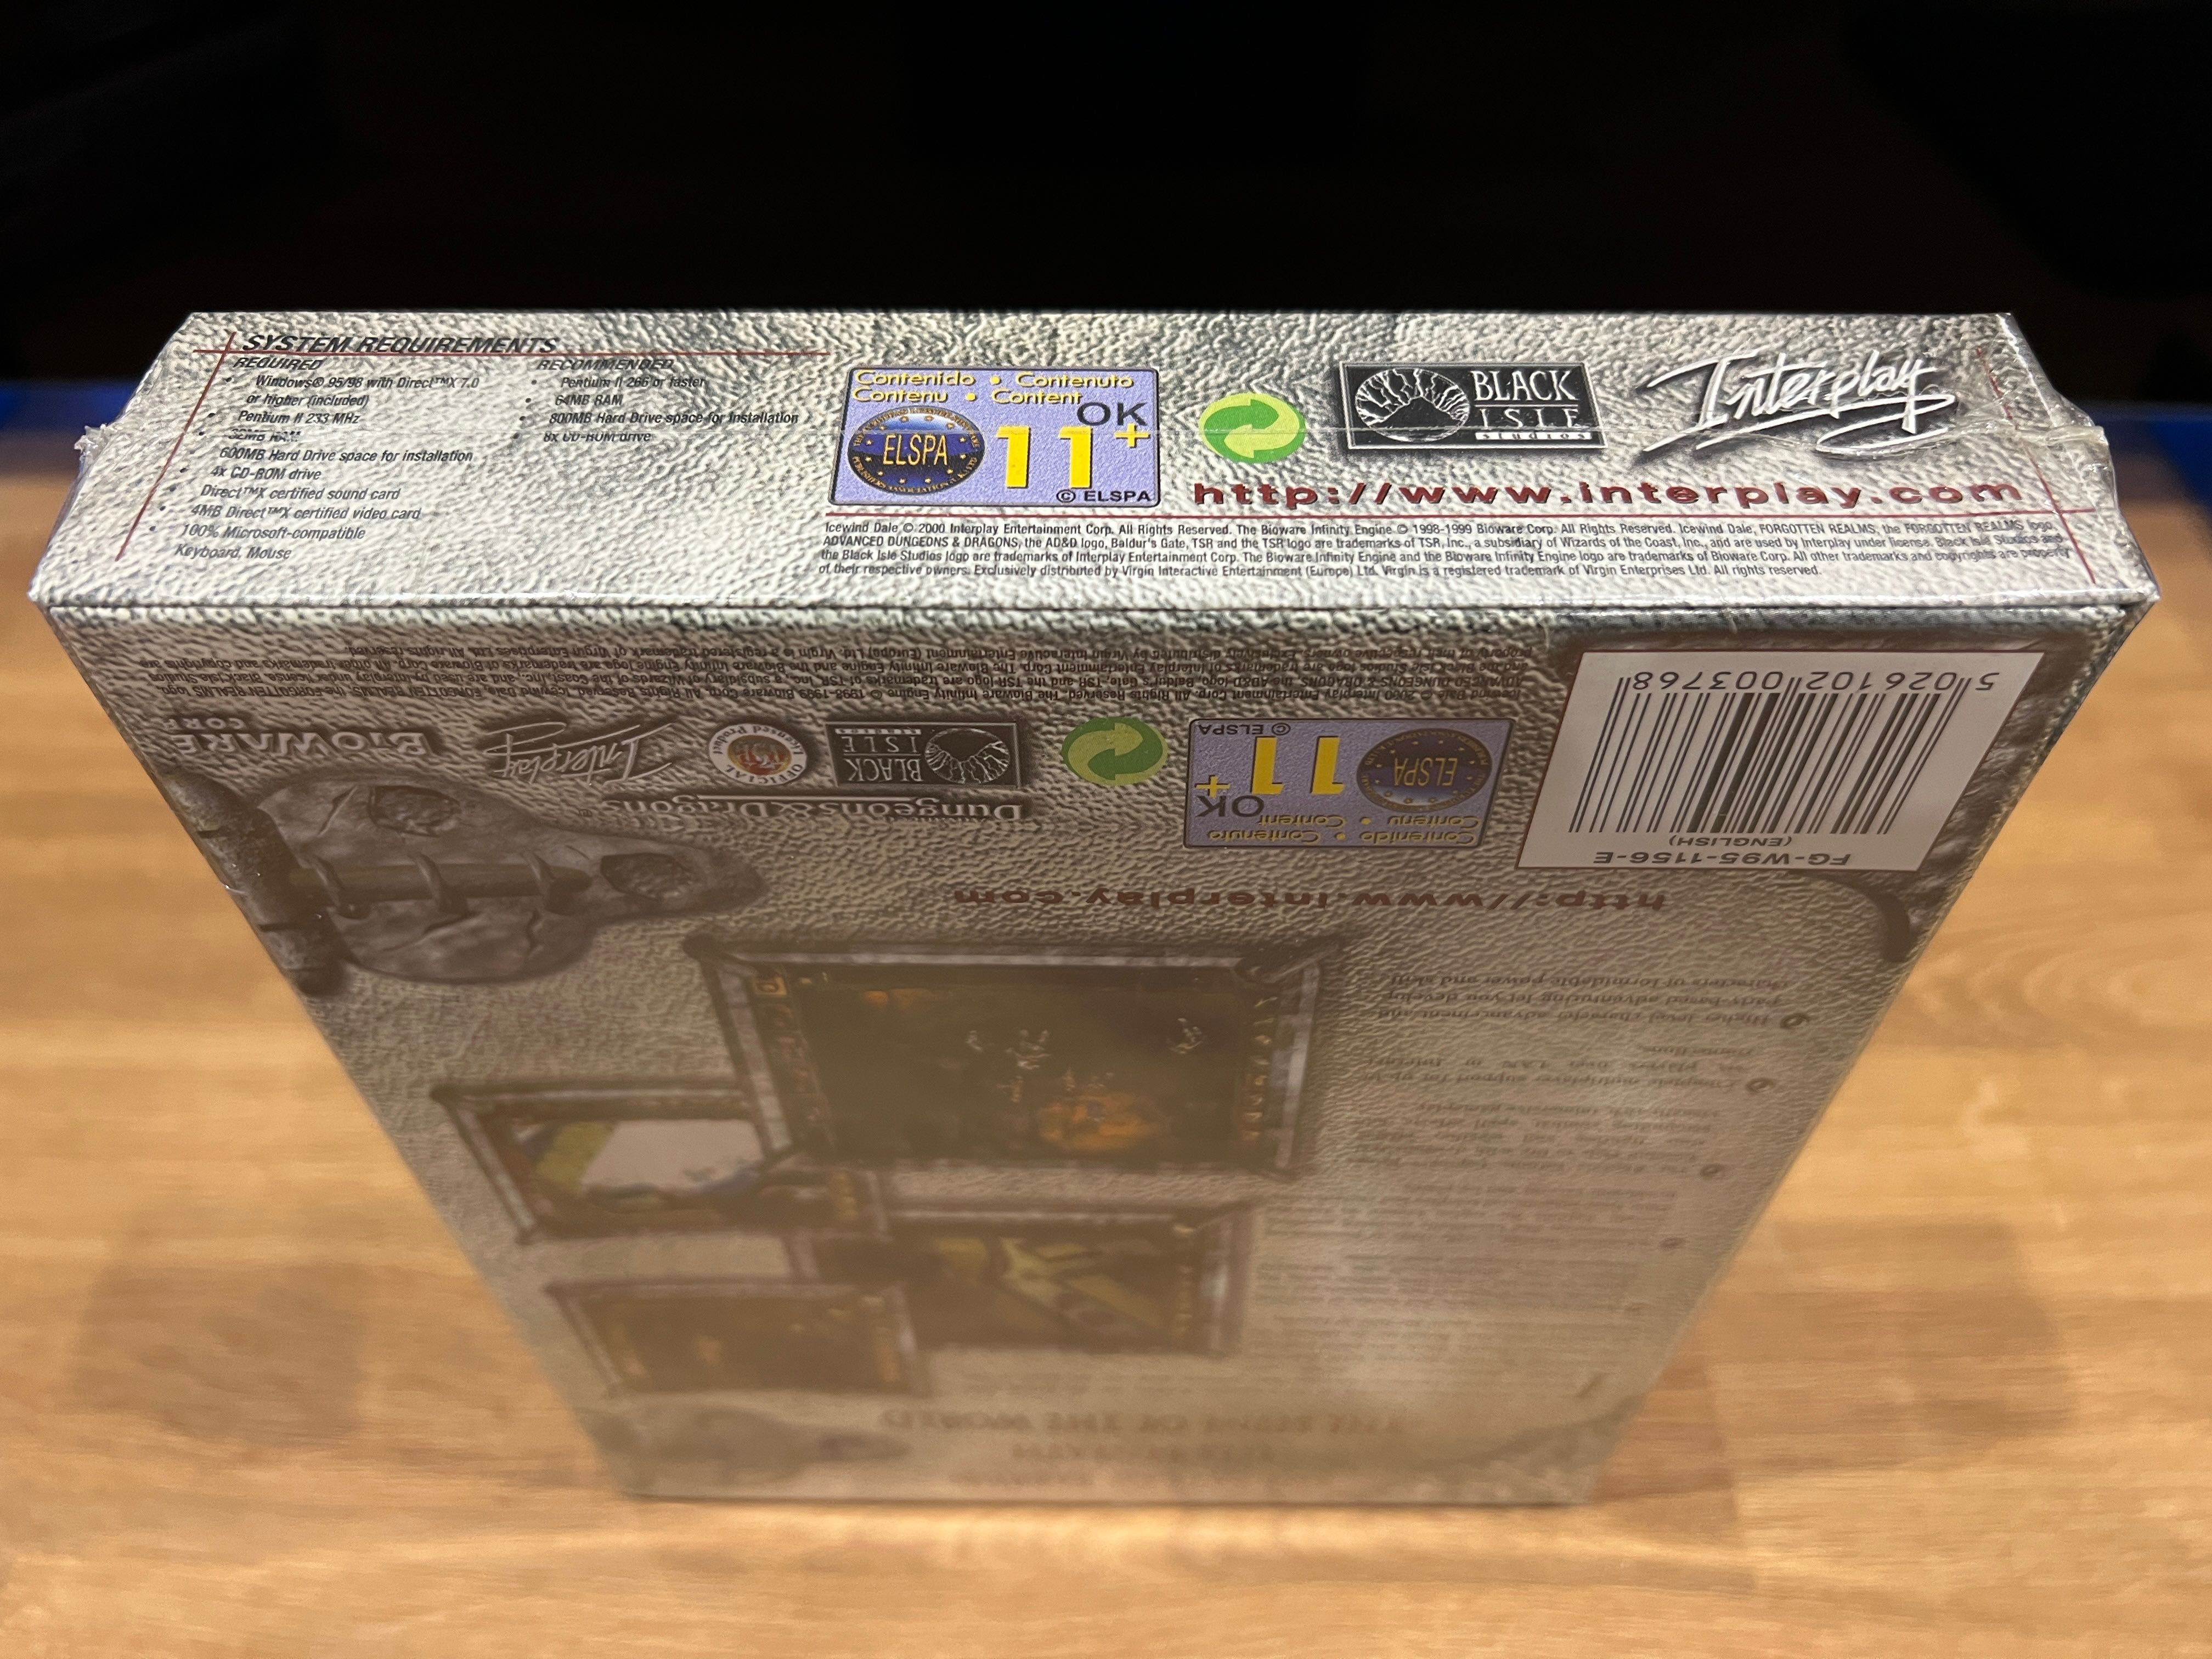 Icewind Dale 1 NOWY FOLIA (PC EN 2000) BIG BOX premierowe wydanie